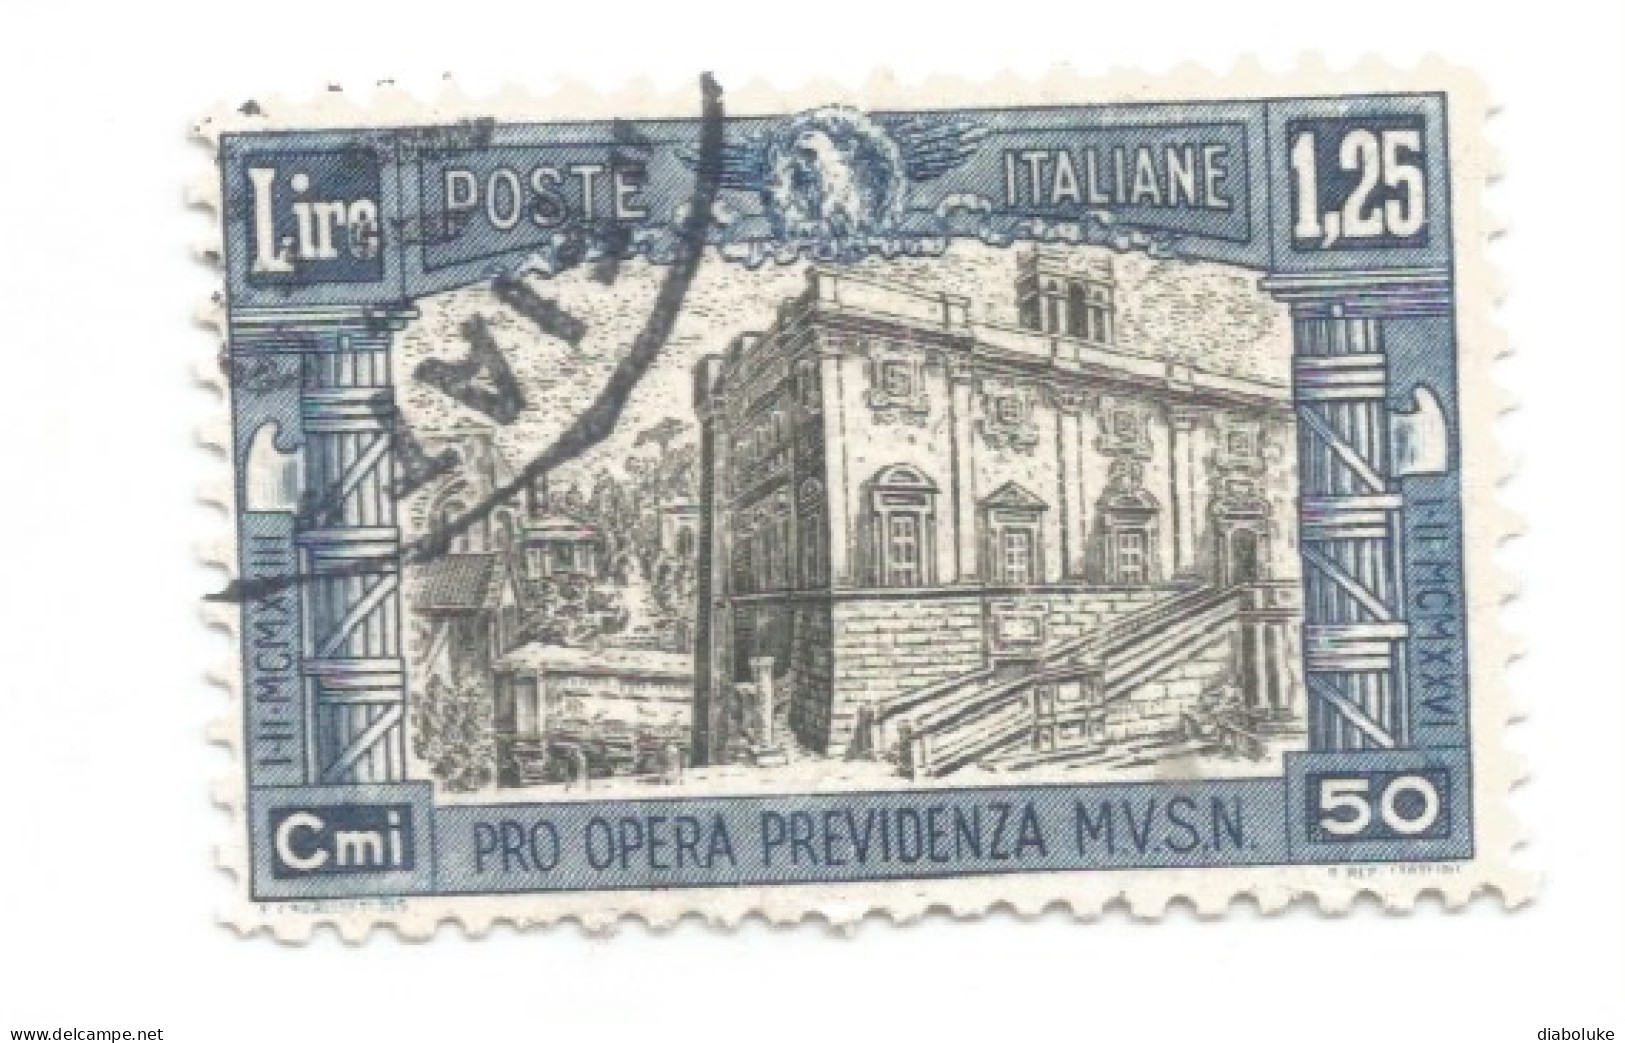 (REGNO D'ITALIA) 1928, PRO OPERA PREVIDENZA MILIZIA, 2° EMISSIONE - Serie Di 4 Francobolli Usati, Annulli Da Periziare - Usados